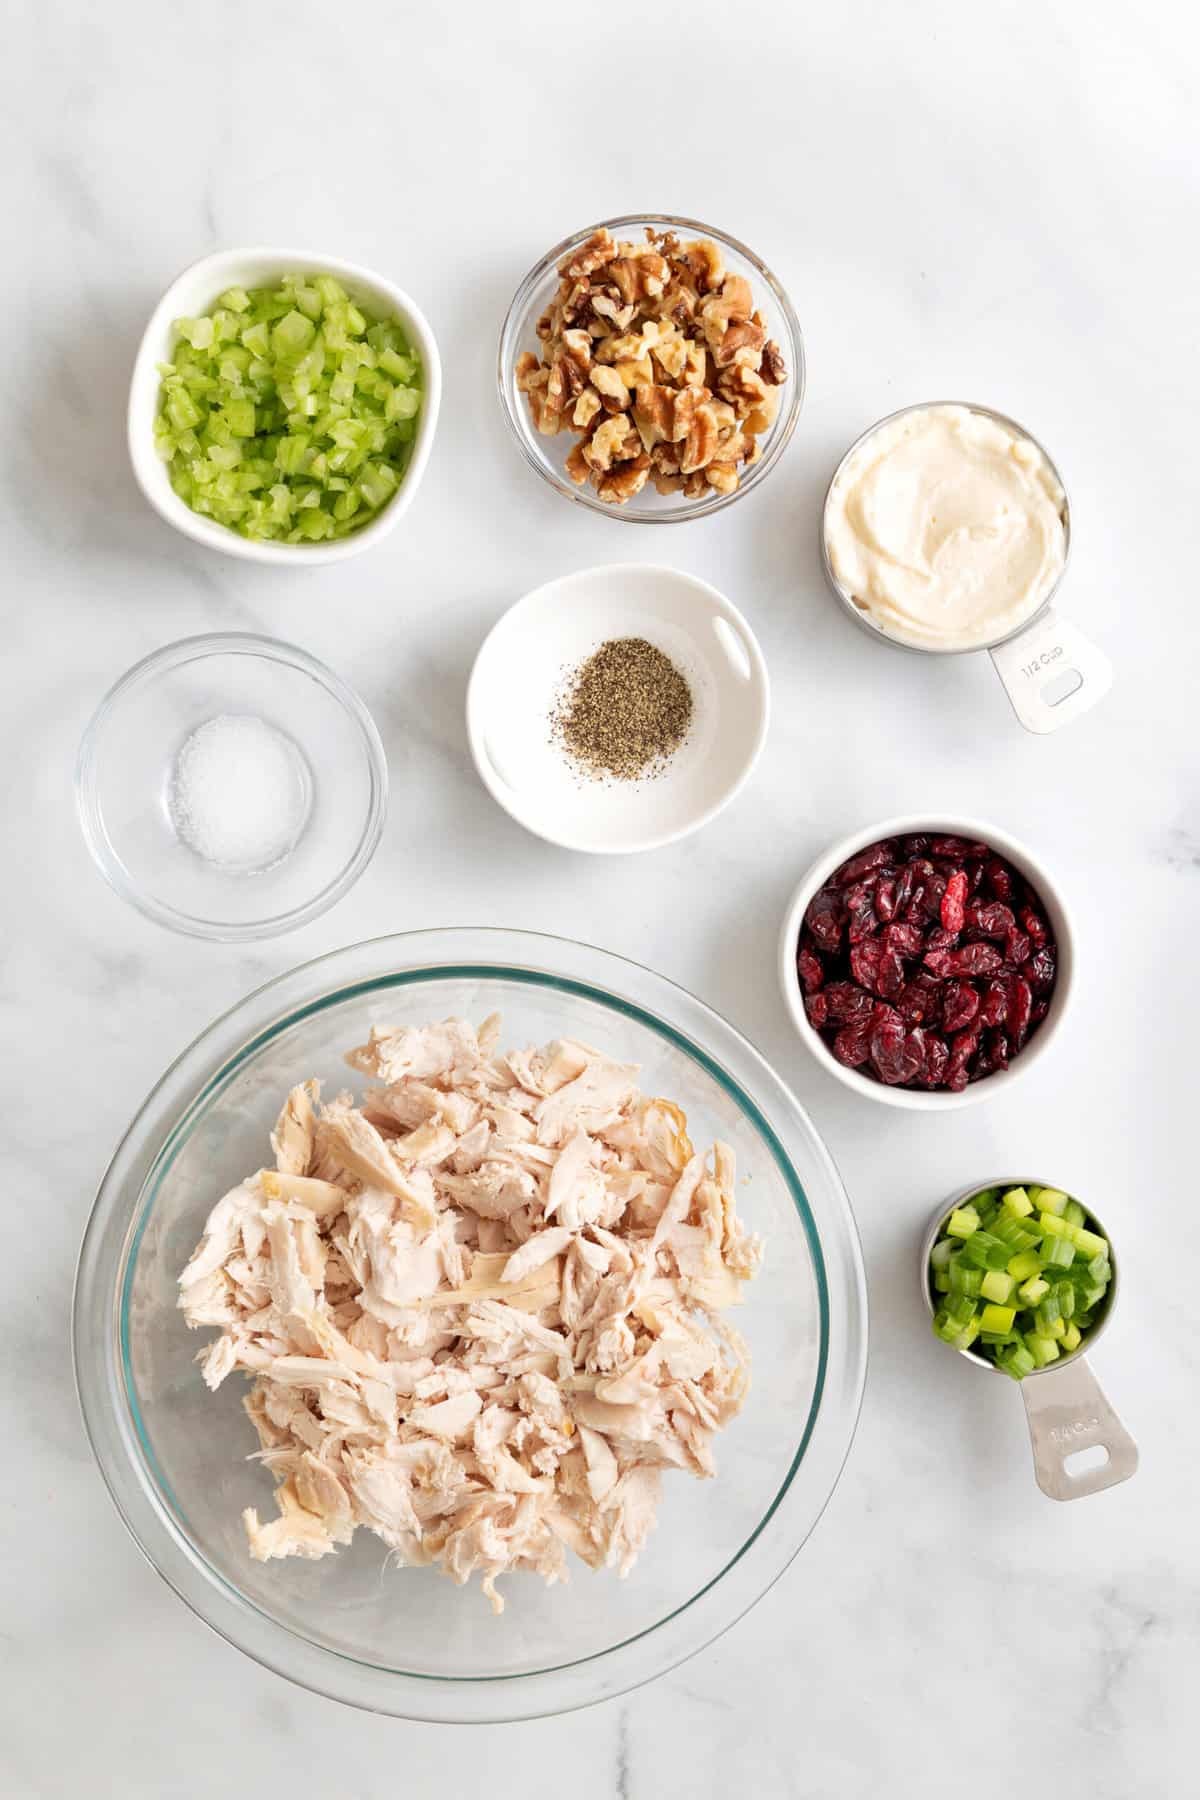 ingredients to make cranberry chicken salad. 